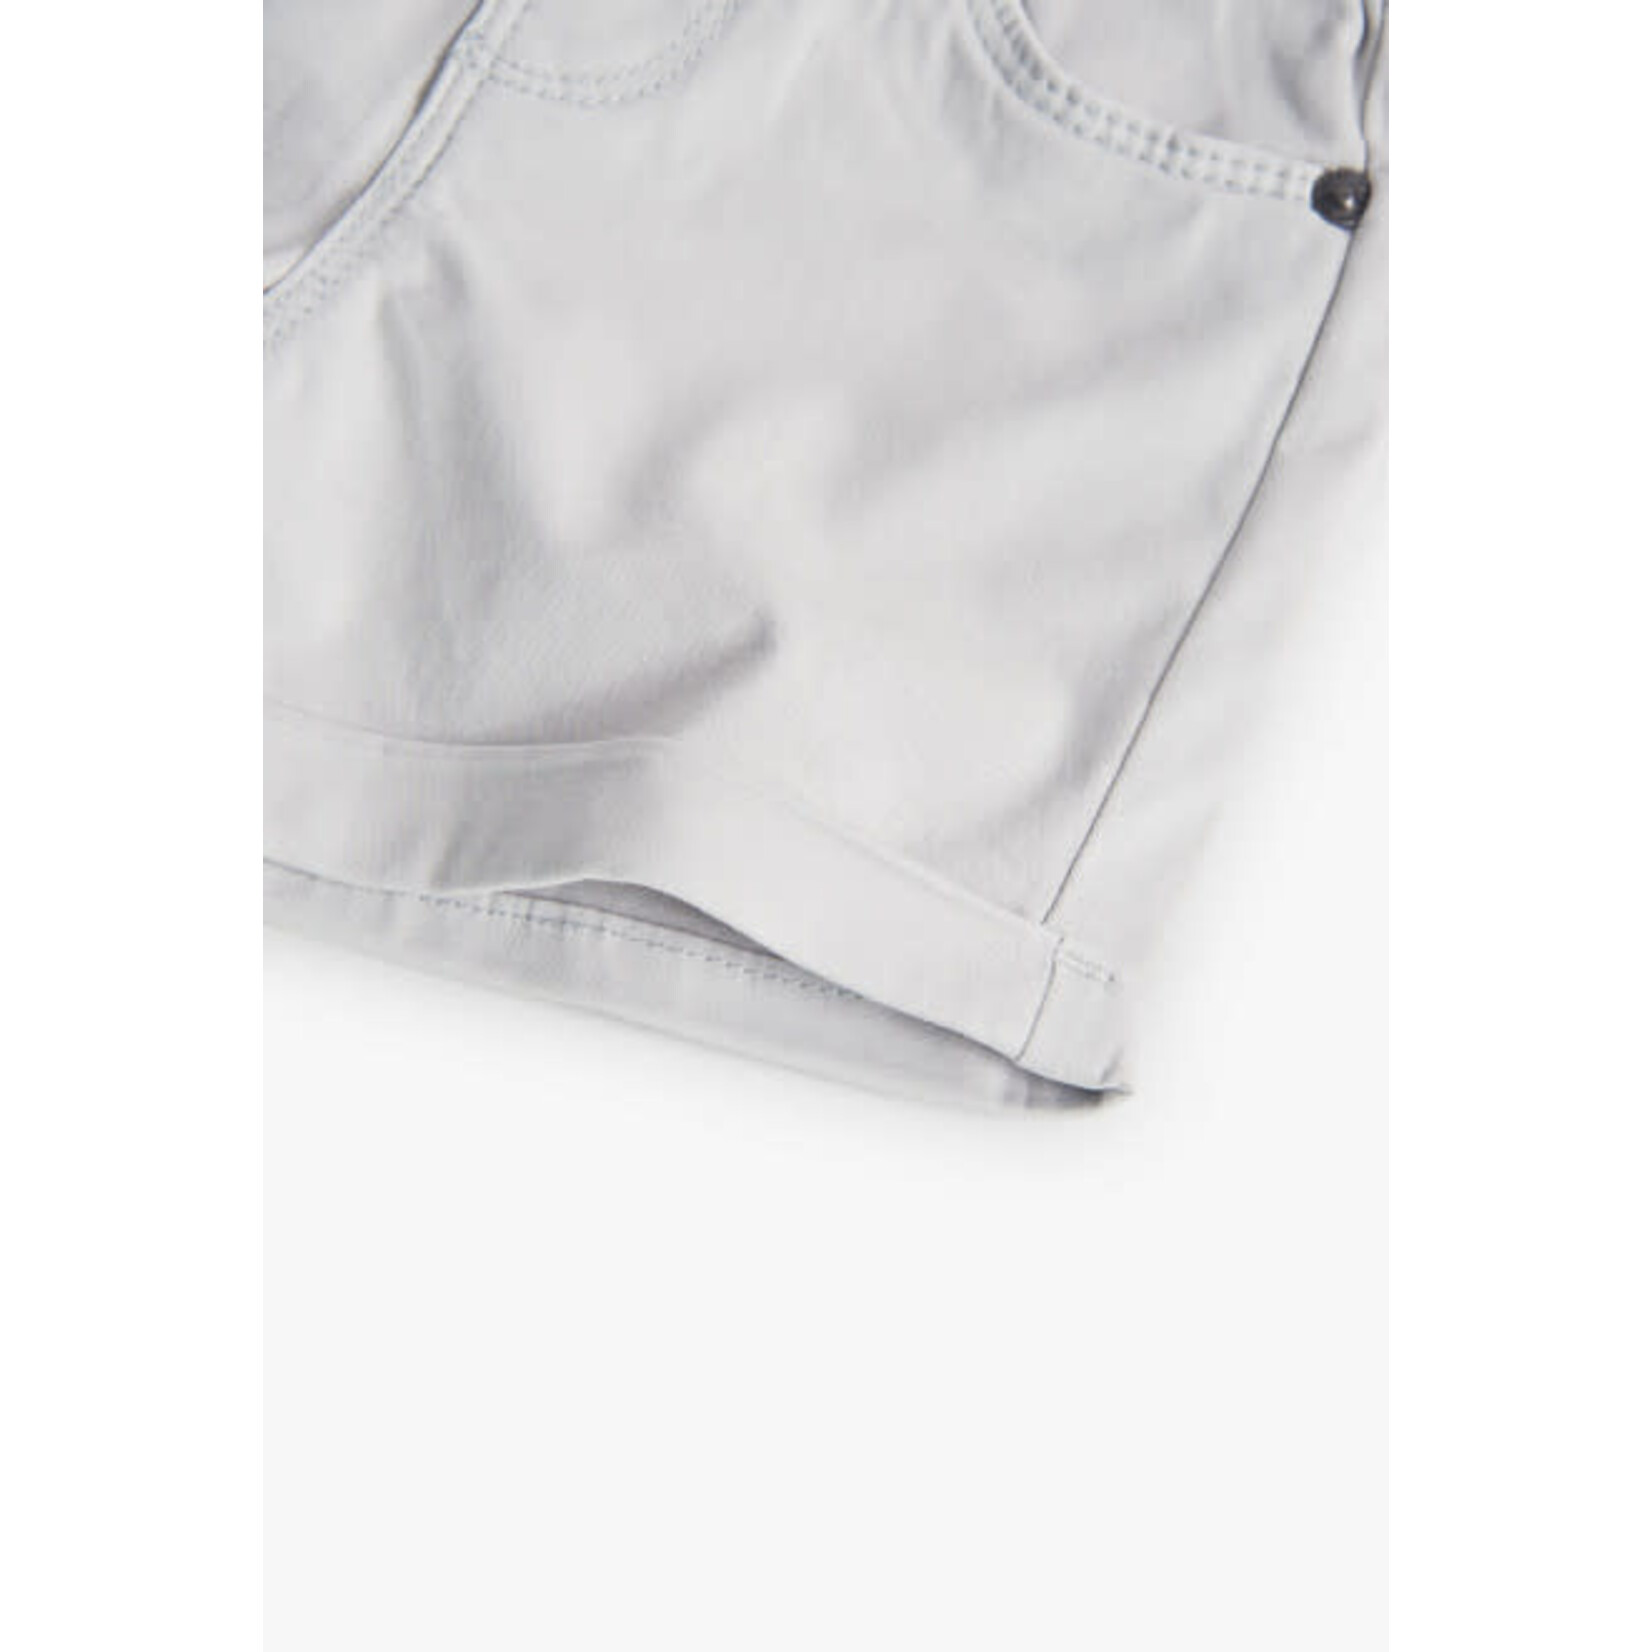 Boboli BOBOLI - Light grey canvas shorts with drawstring